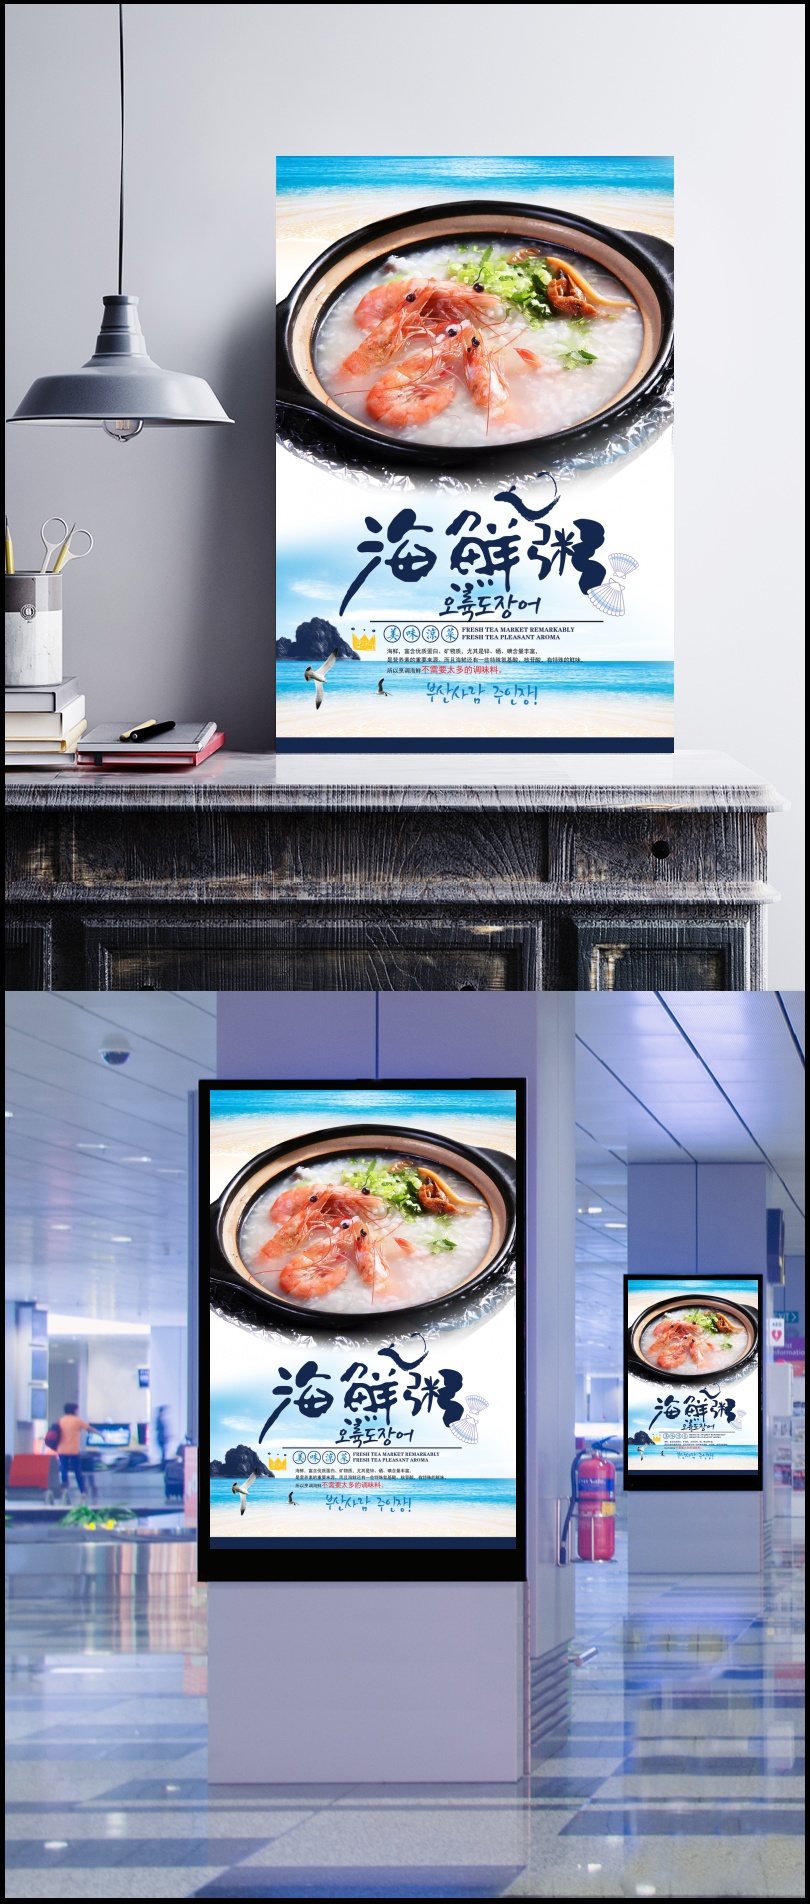 海鲜粥美食宣传海报PSD素材